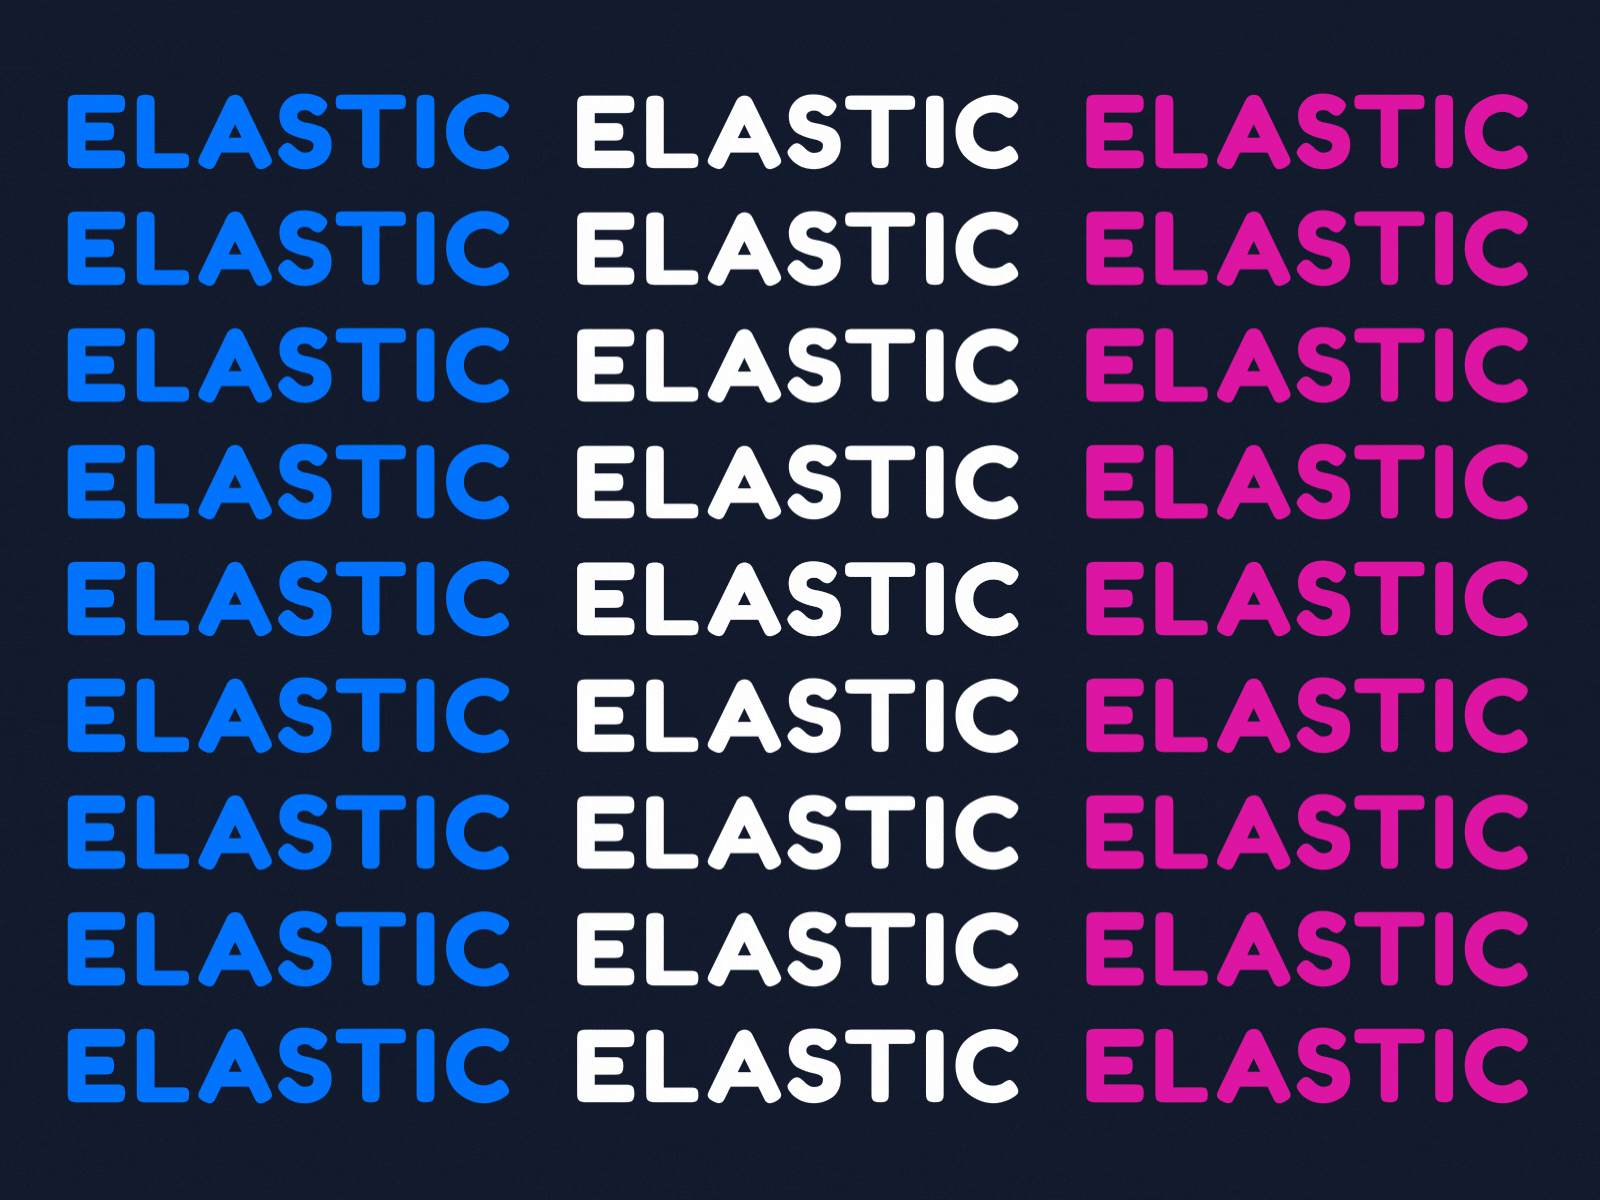 kinetic typography. elastic type